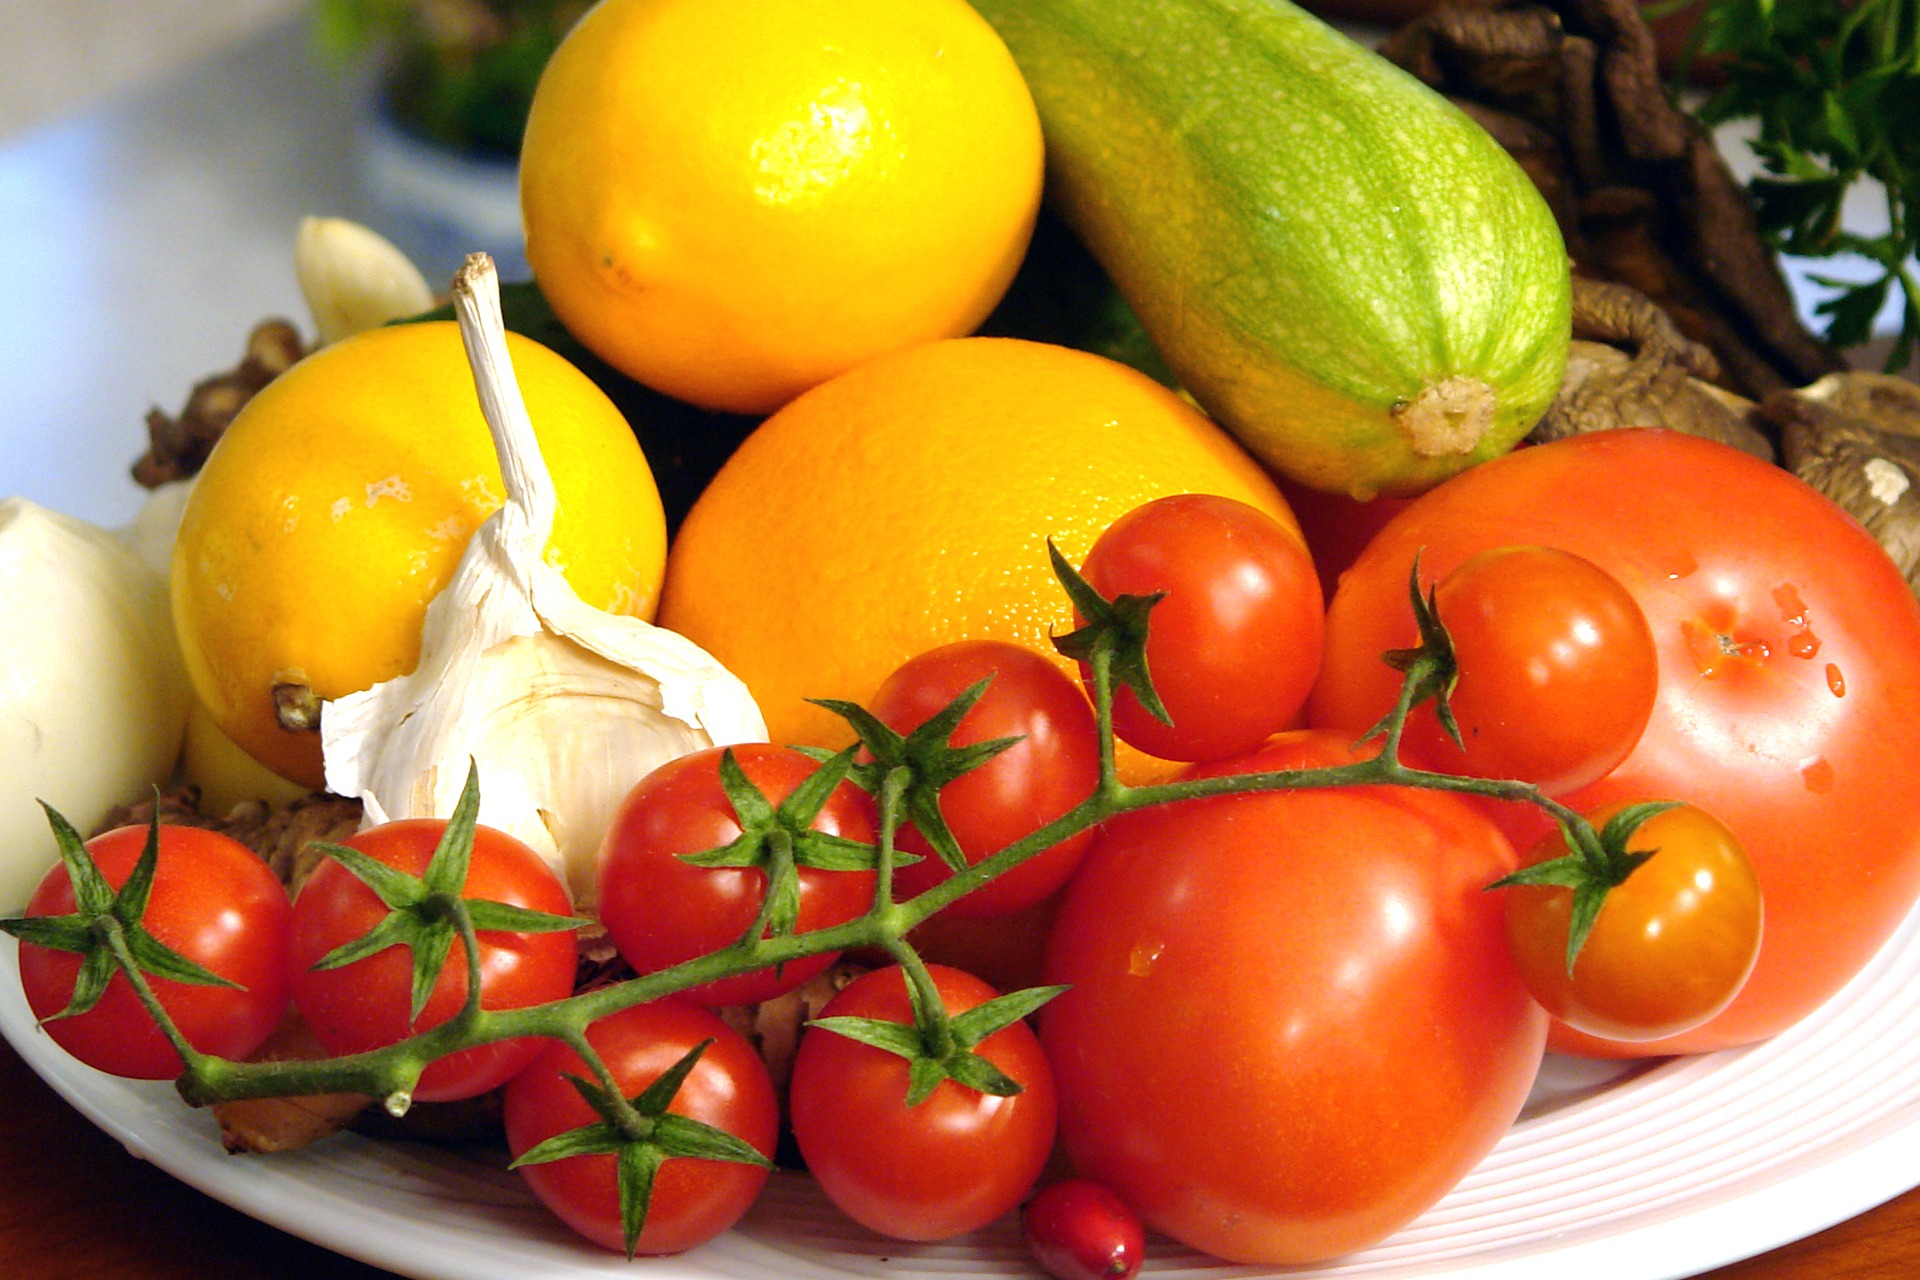 Una alimentación a base de frutas y verduras aumenta las defensas ante varias enfermedades. (Foto Prensa Libre: Pixabay)